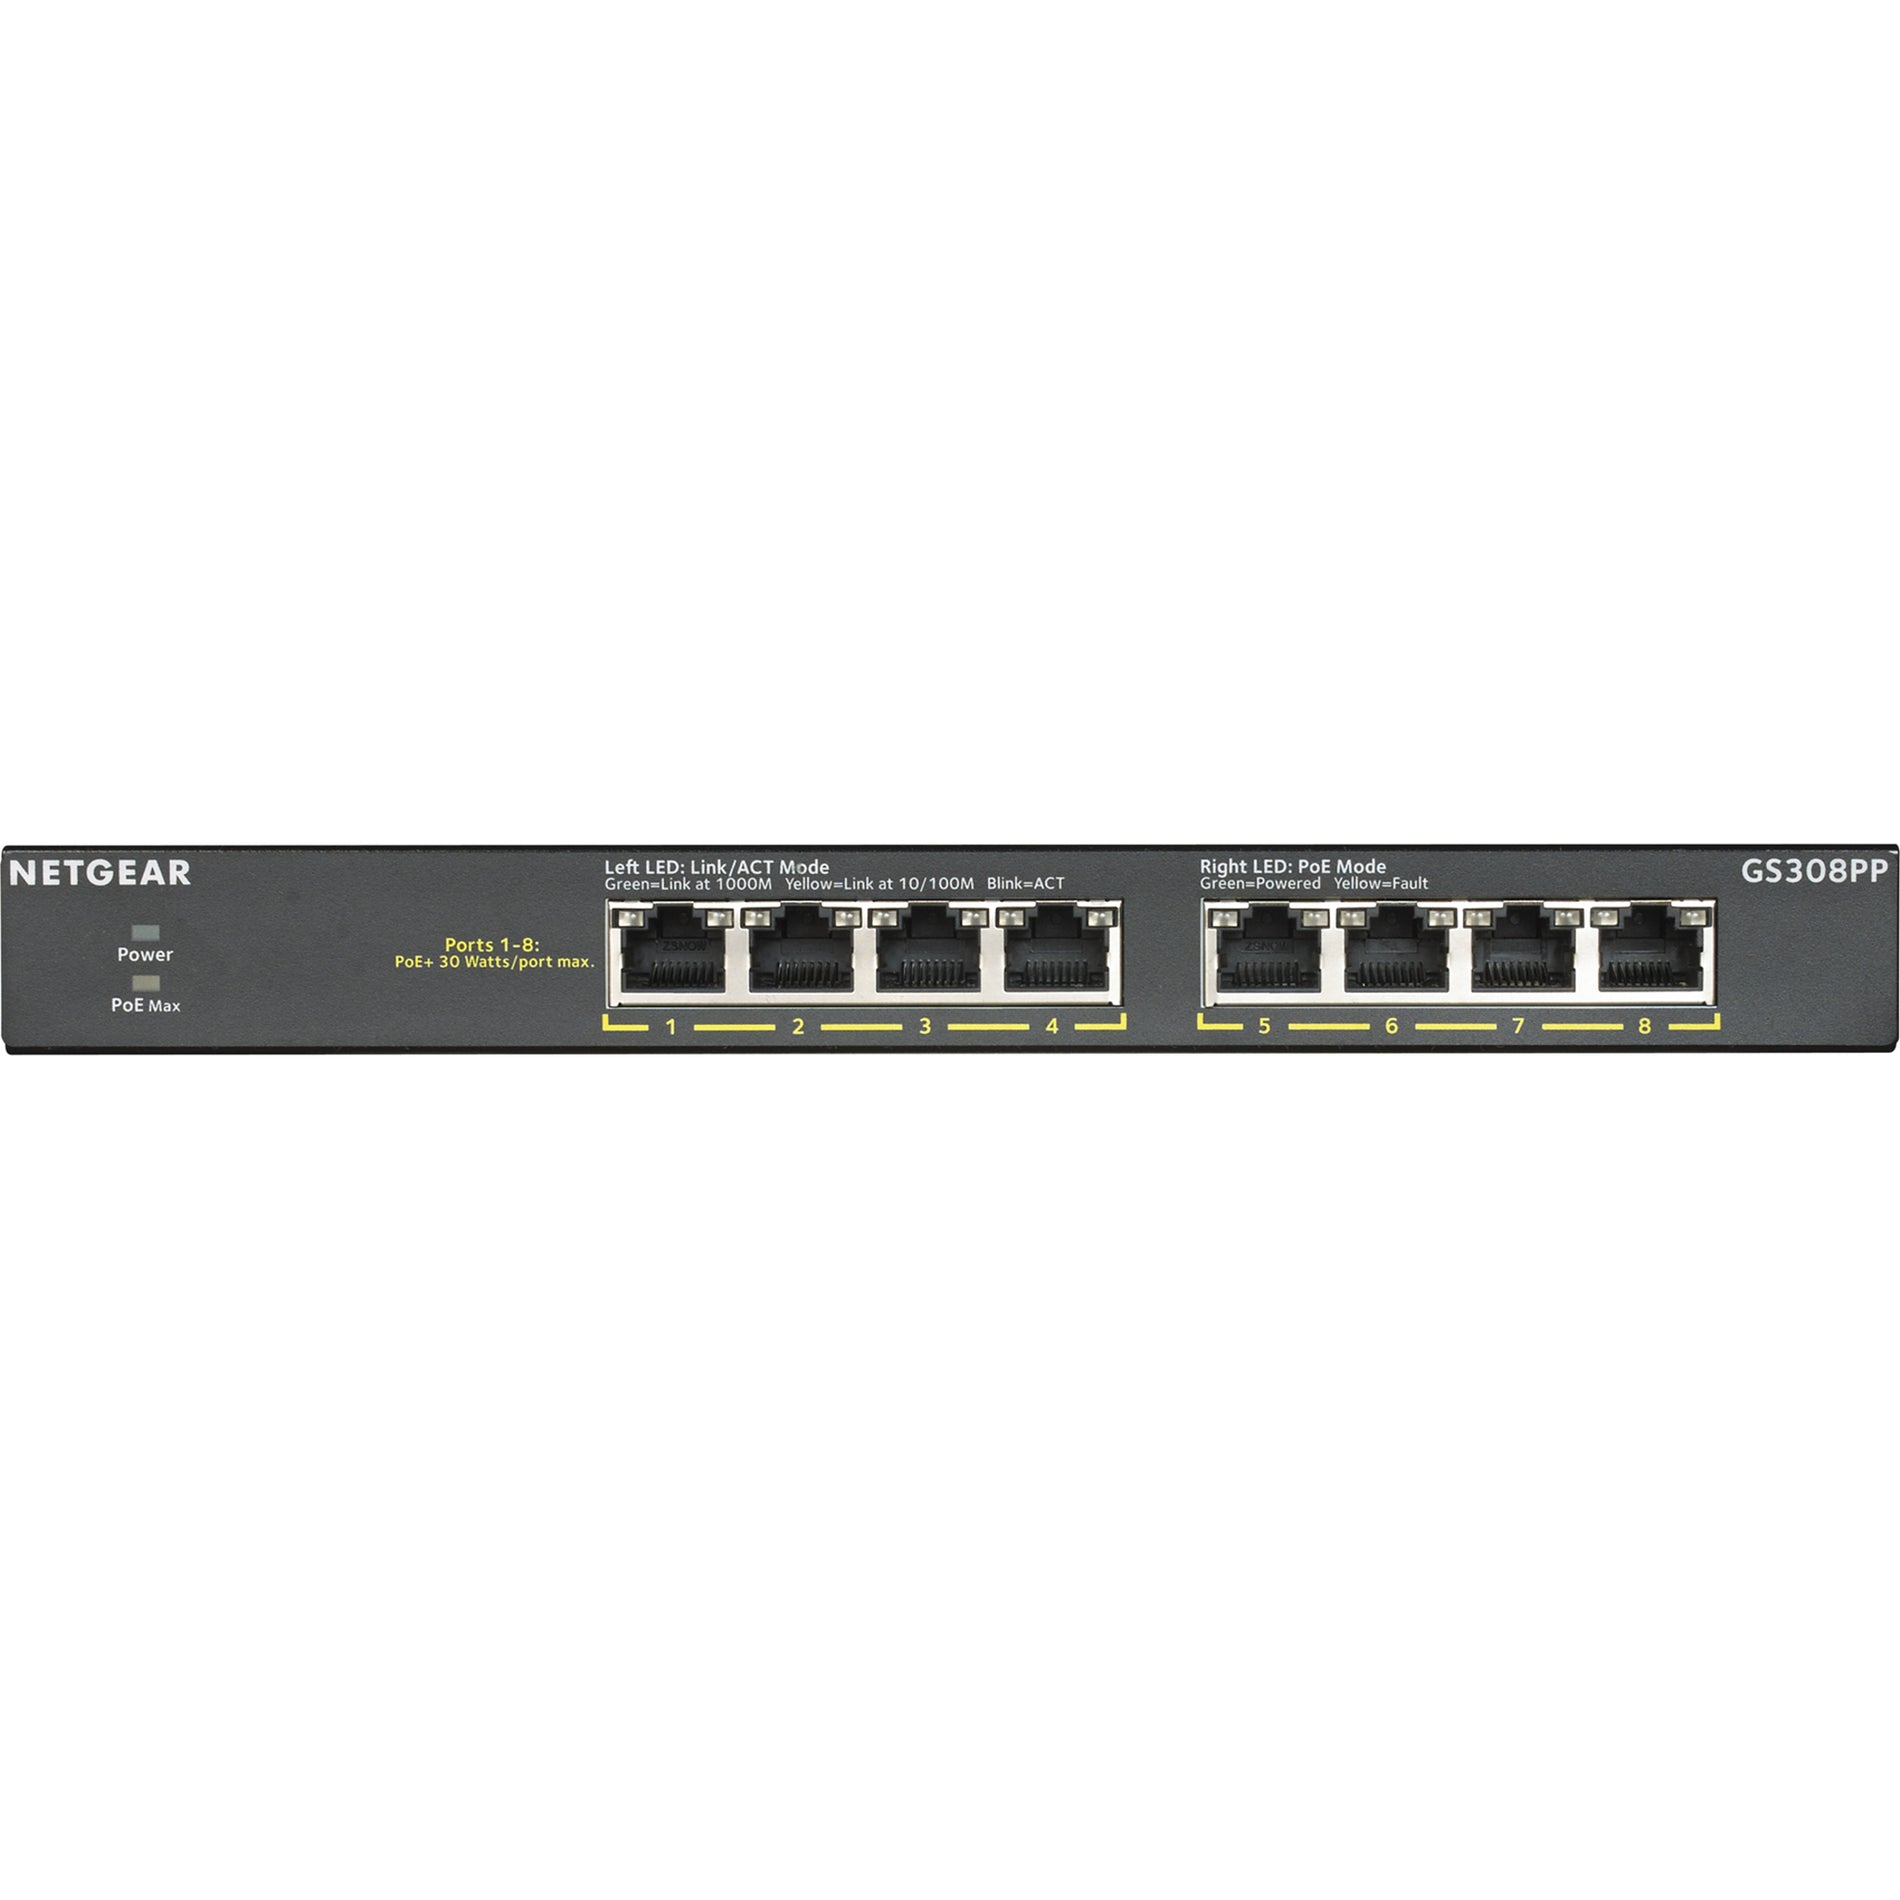 Netgear GS308PP Ethernet Switch (GS308PP-100NAS)